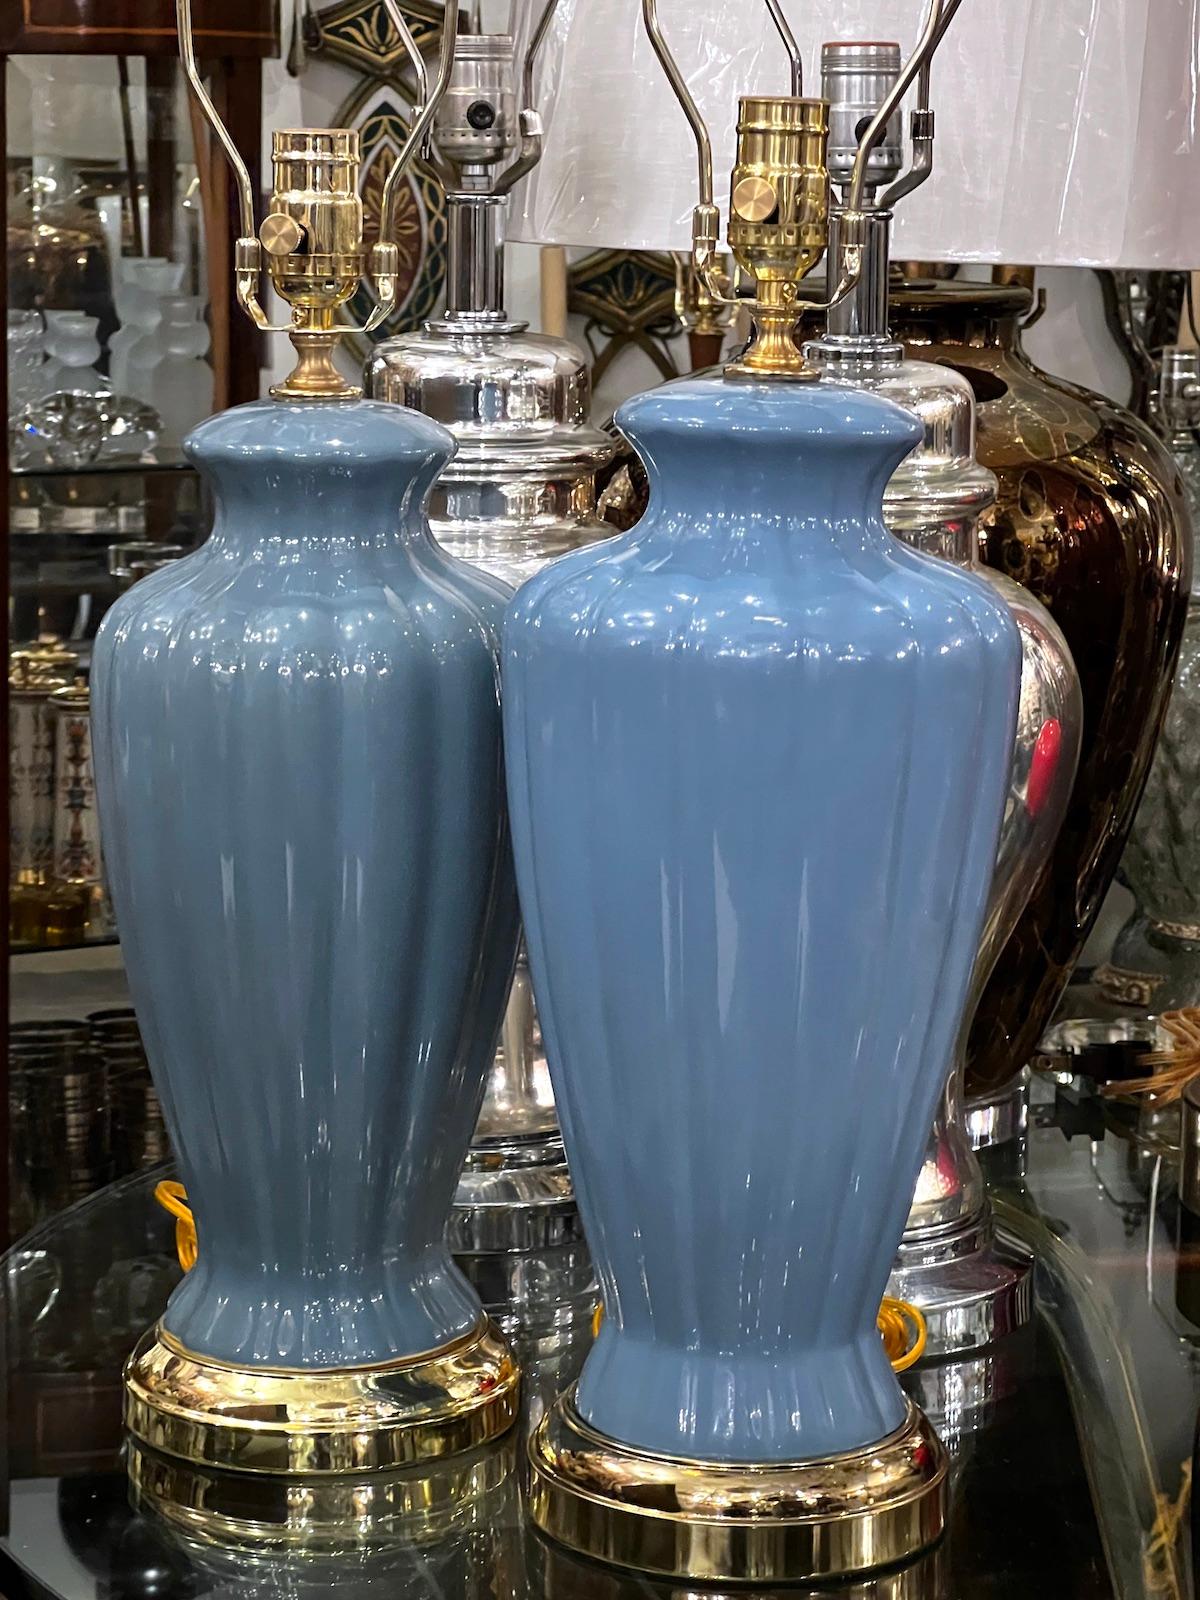 Paire de lampes de table en porcelaine bleu clair, datant des années 1950. 

Mesures :
Hauteur du corps : 16